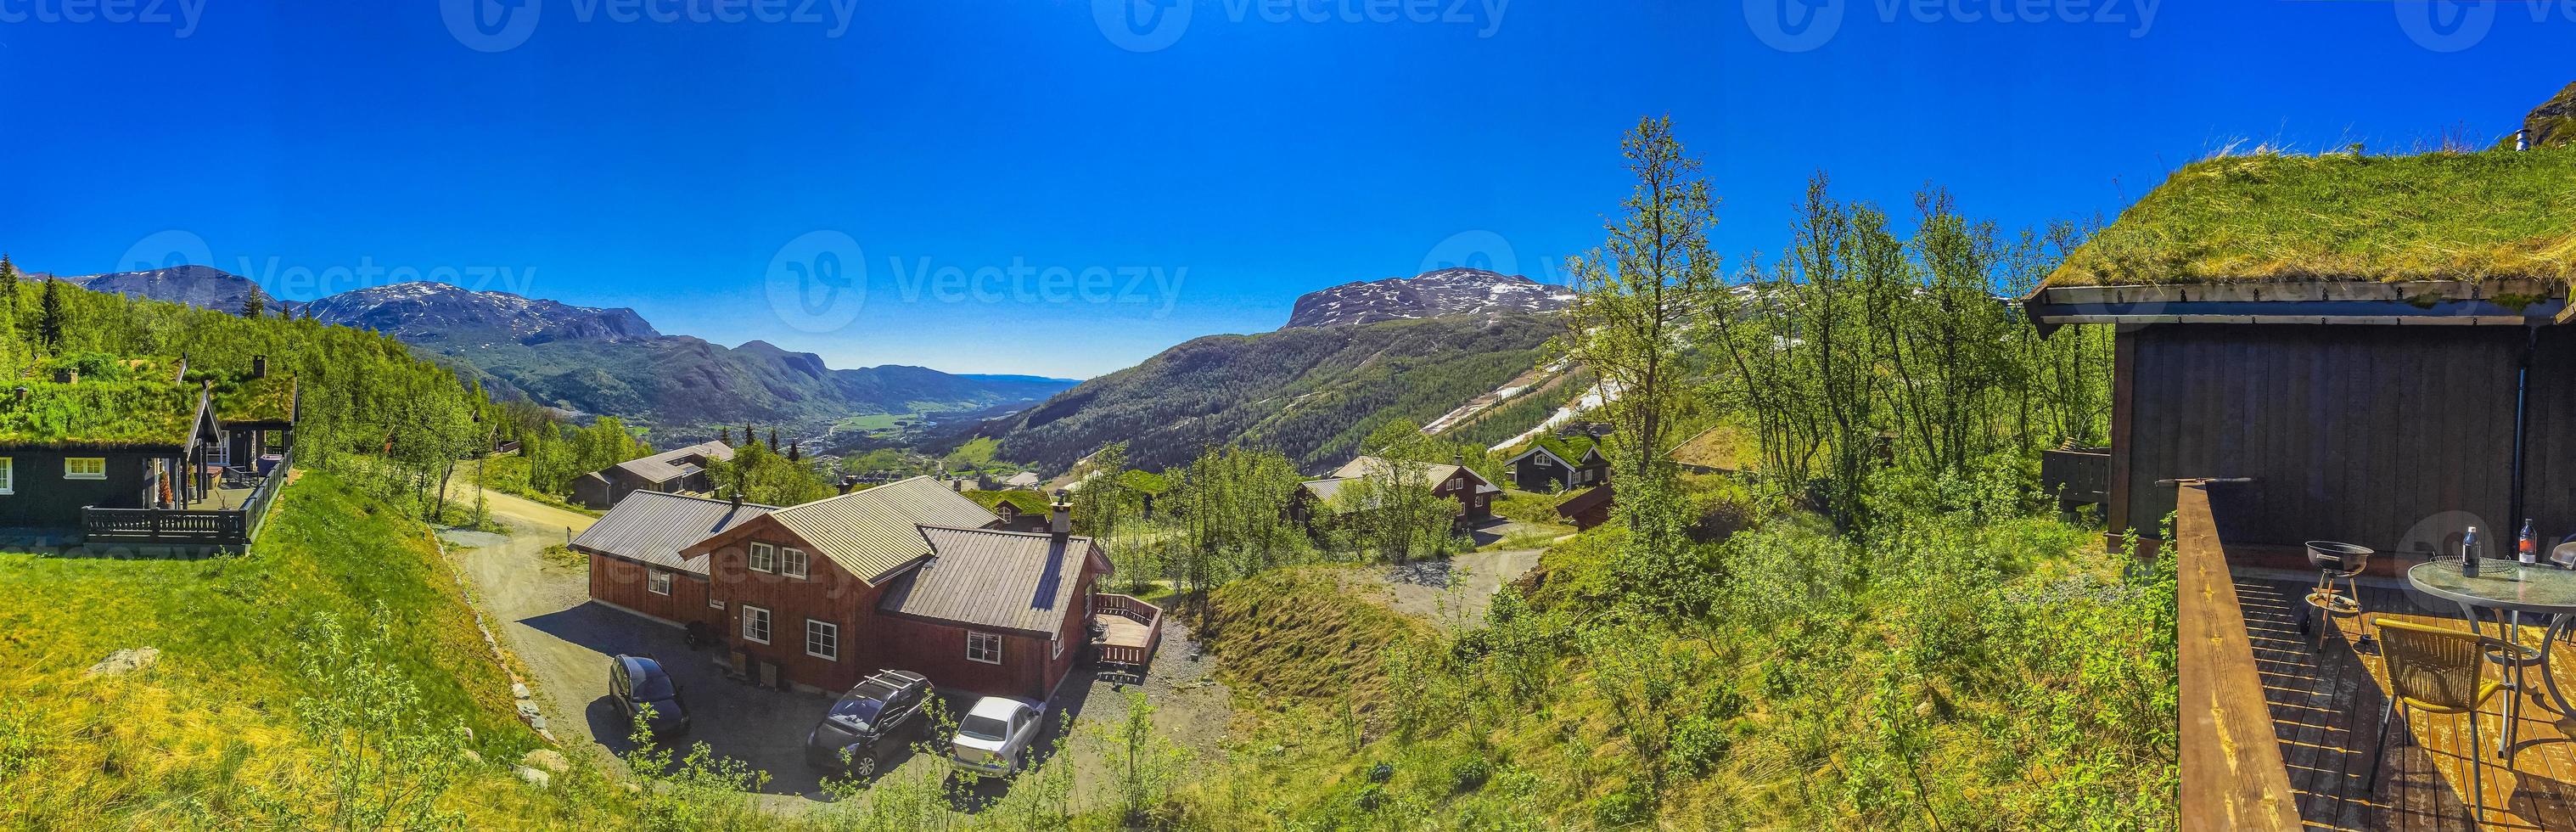 prachtig panorama noorse hemsedal skicentrum met berghut en hutten. foto